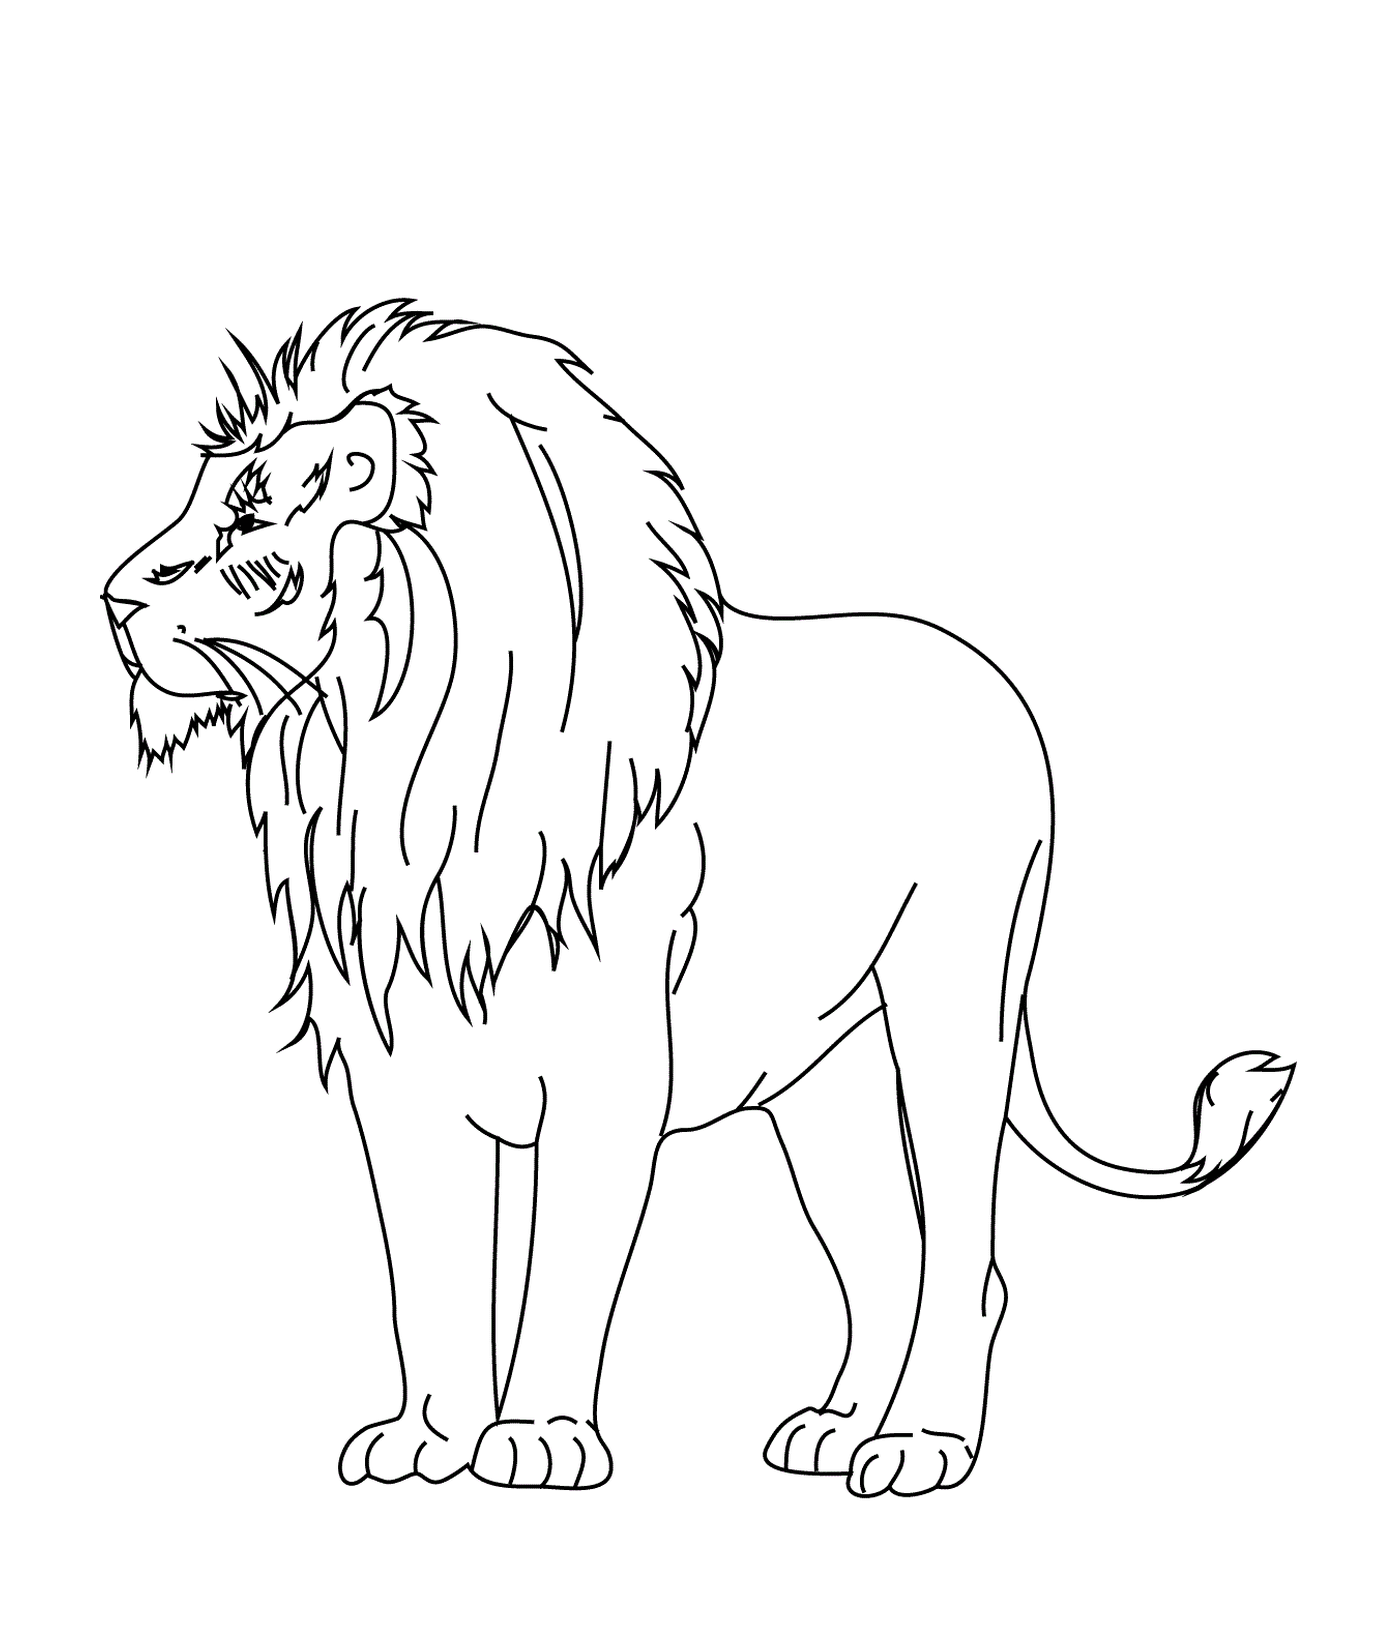  Leão selvagem e simples 